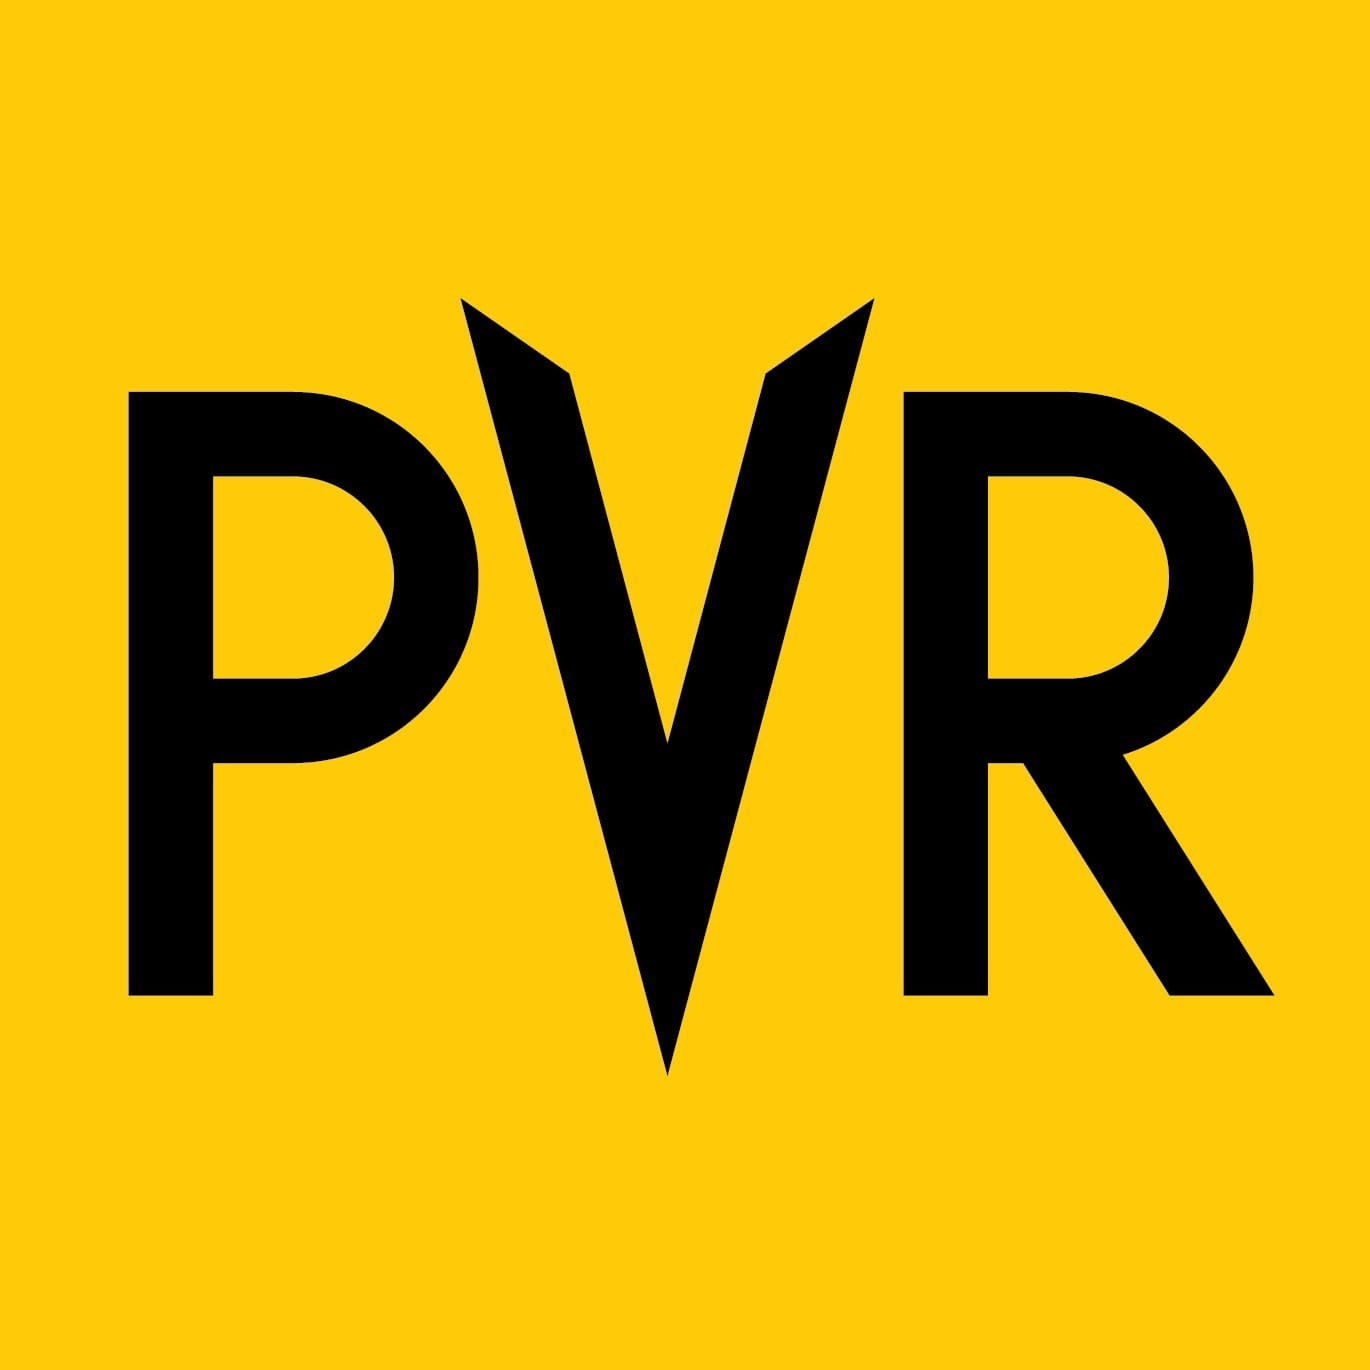 PVR Directors Cut|Amusement Park|Entertainment